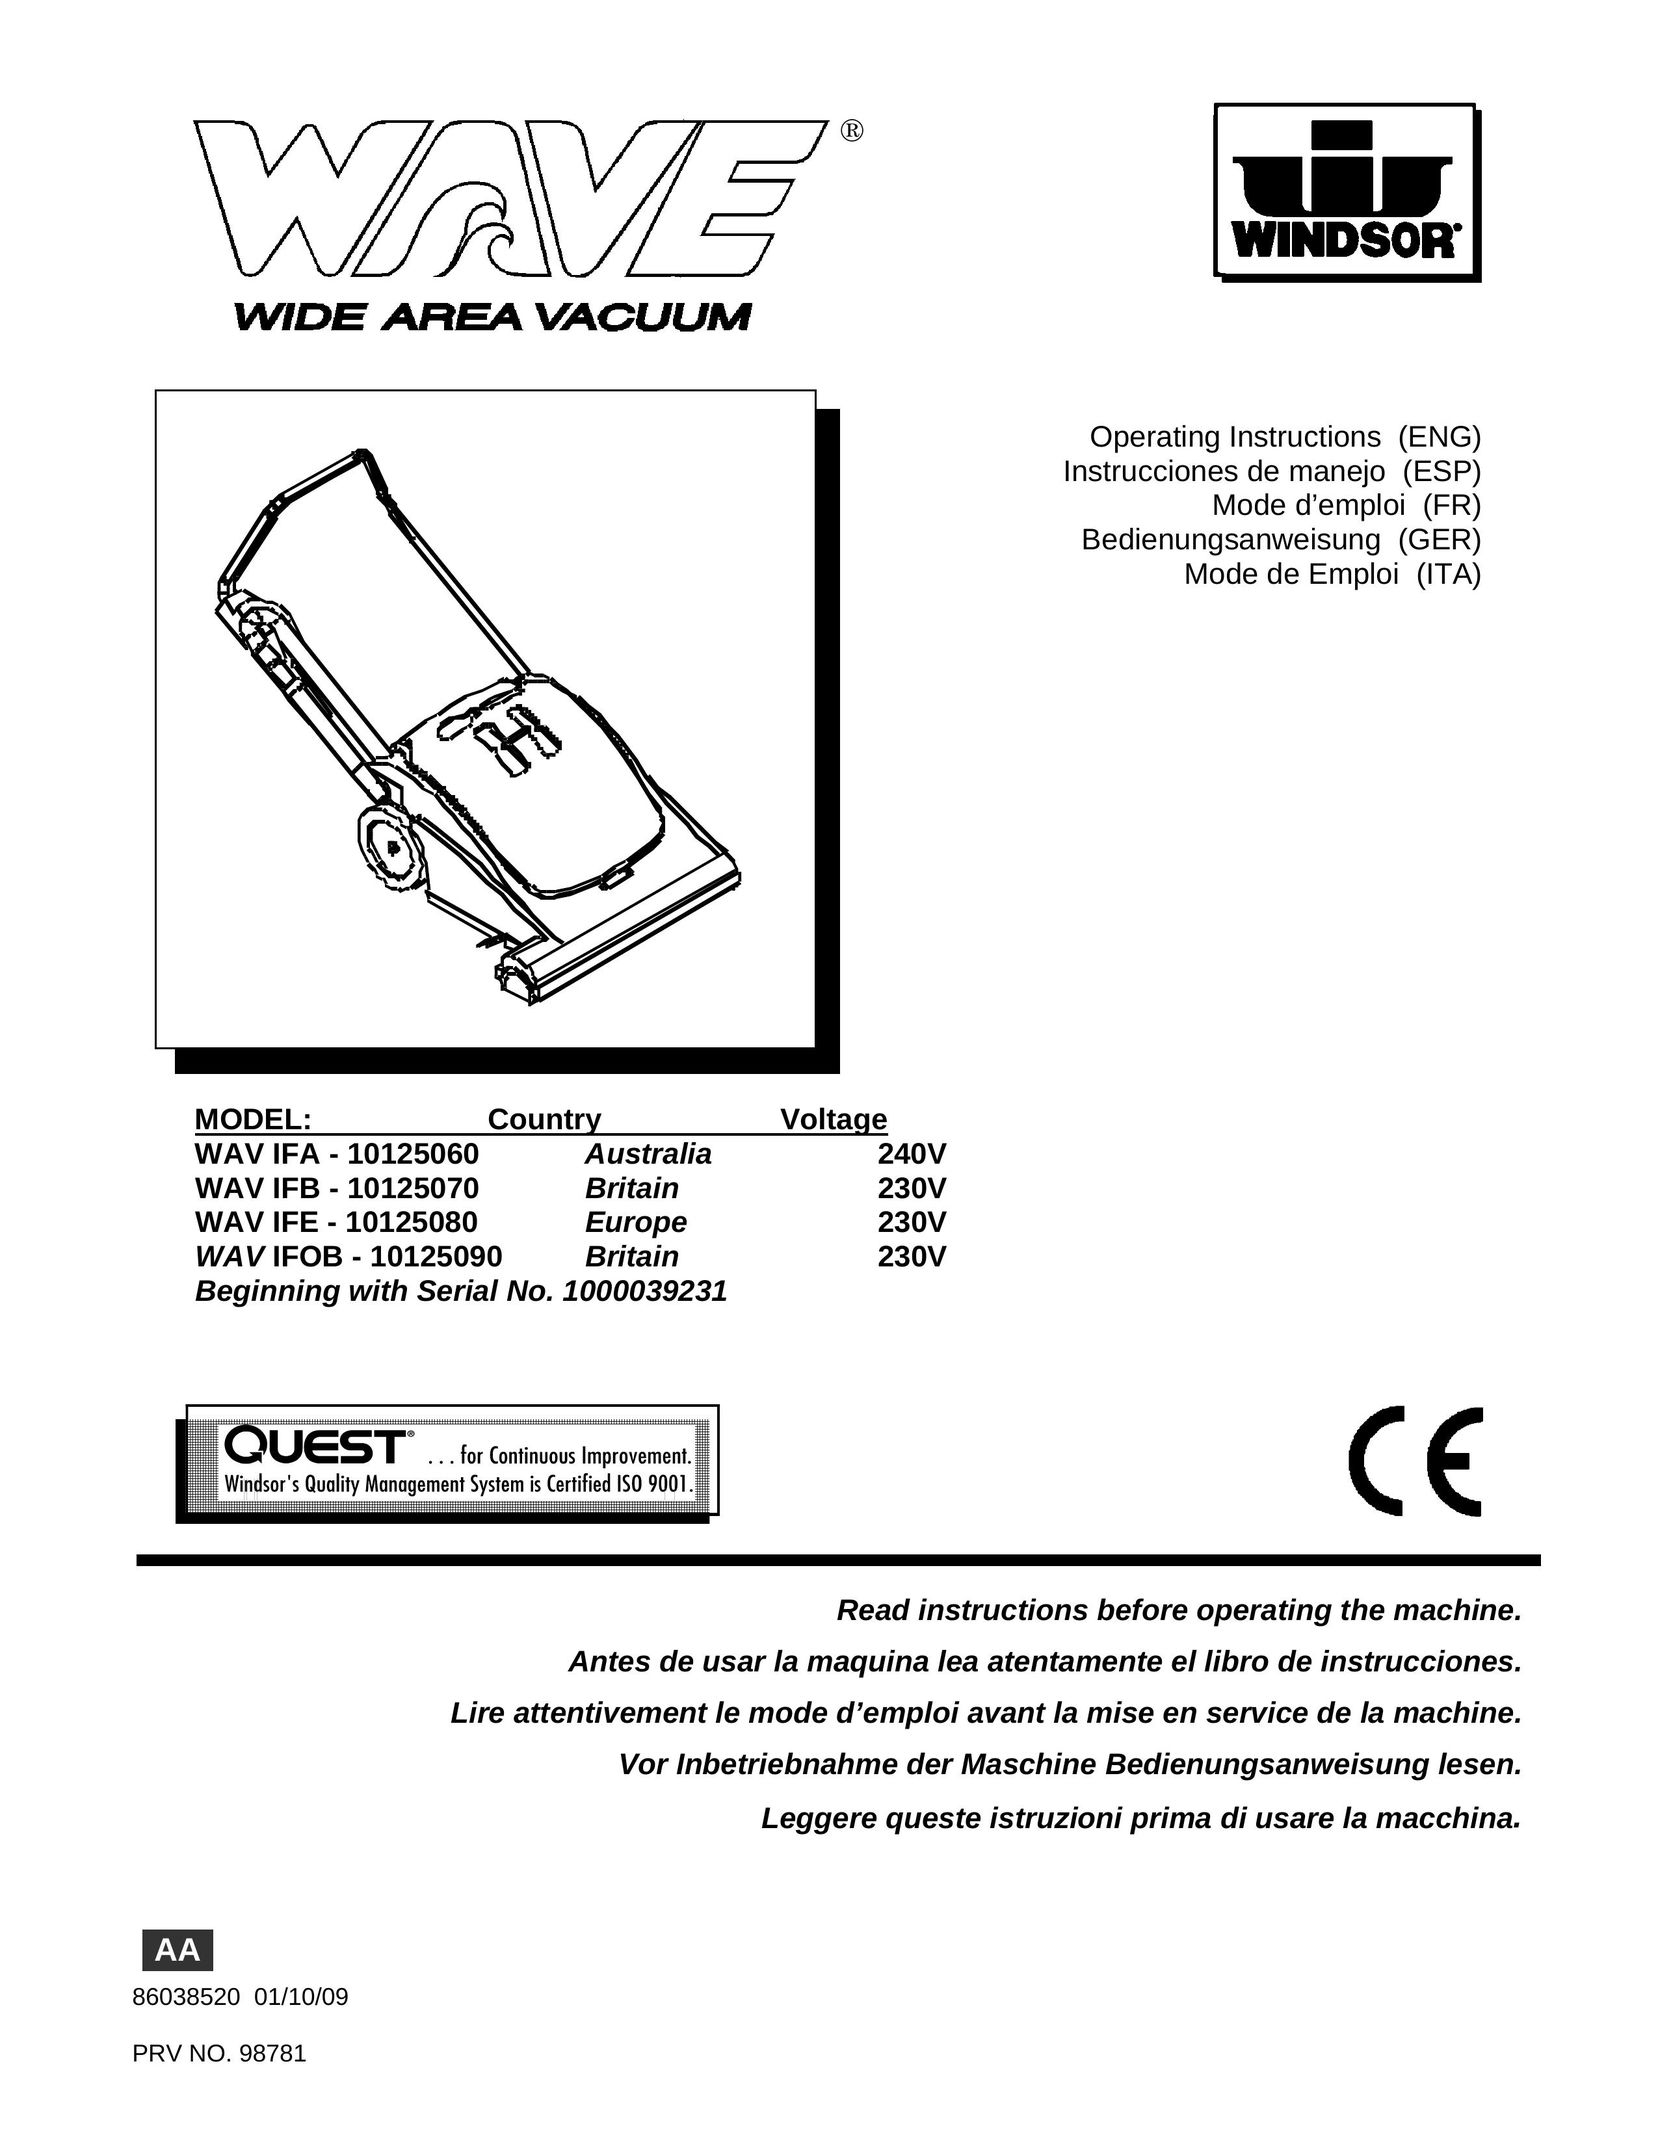 Windsor 10125080 Vacuum Cleaner User Manual